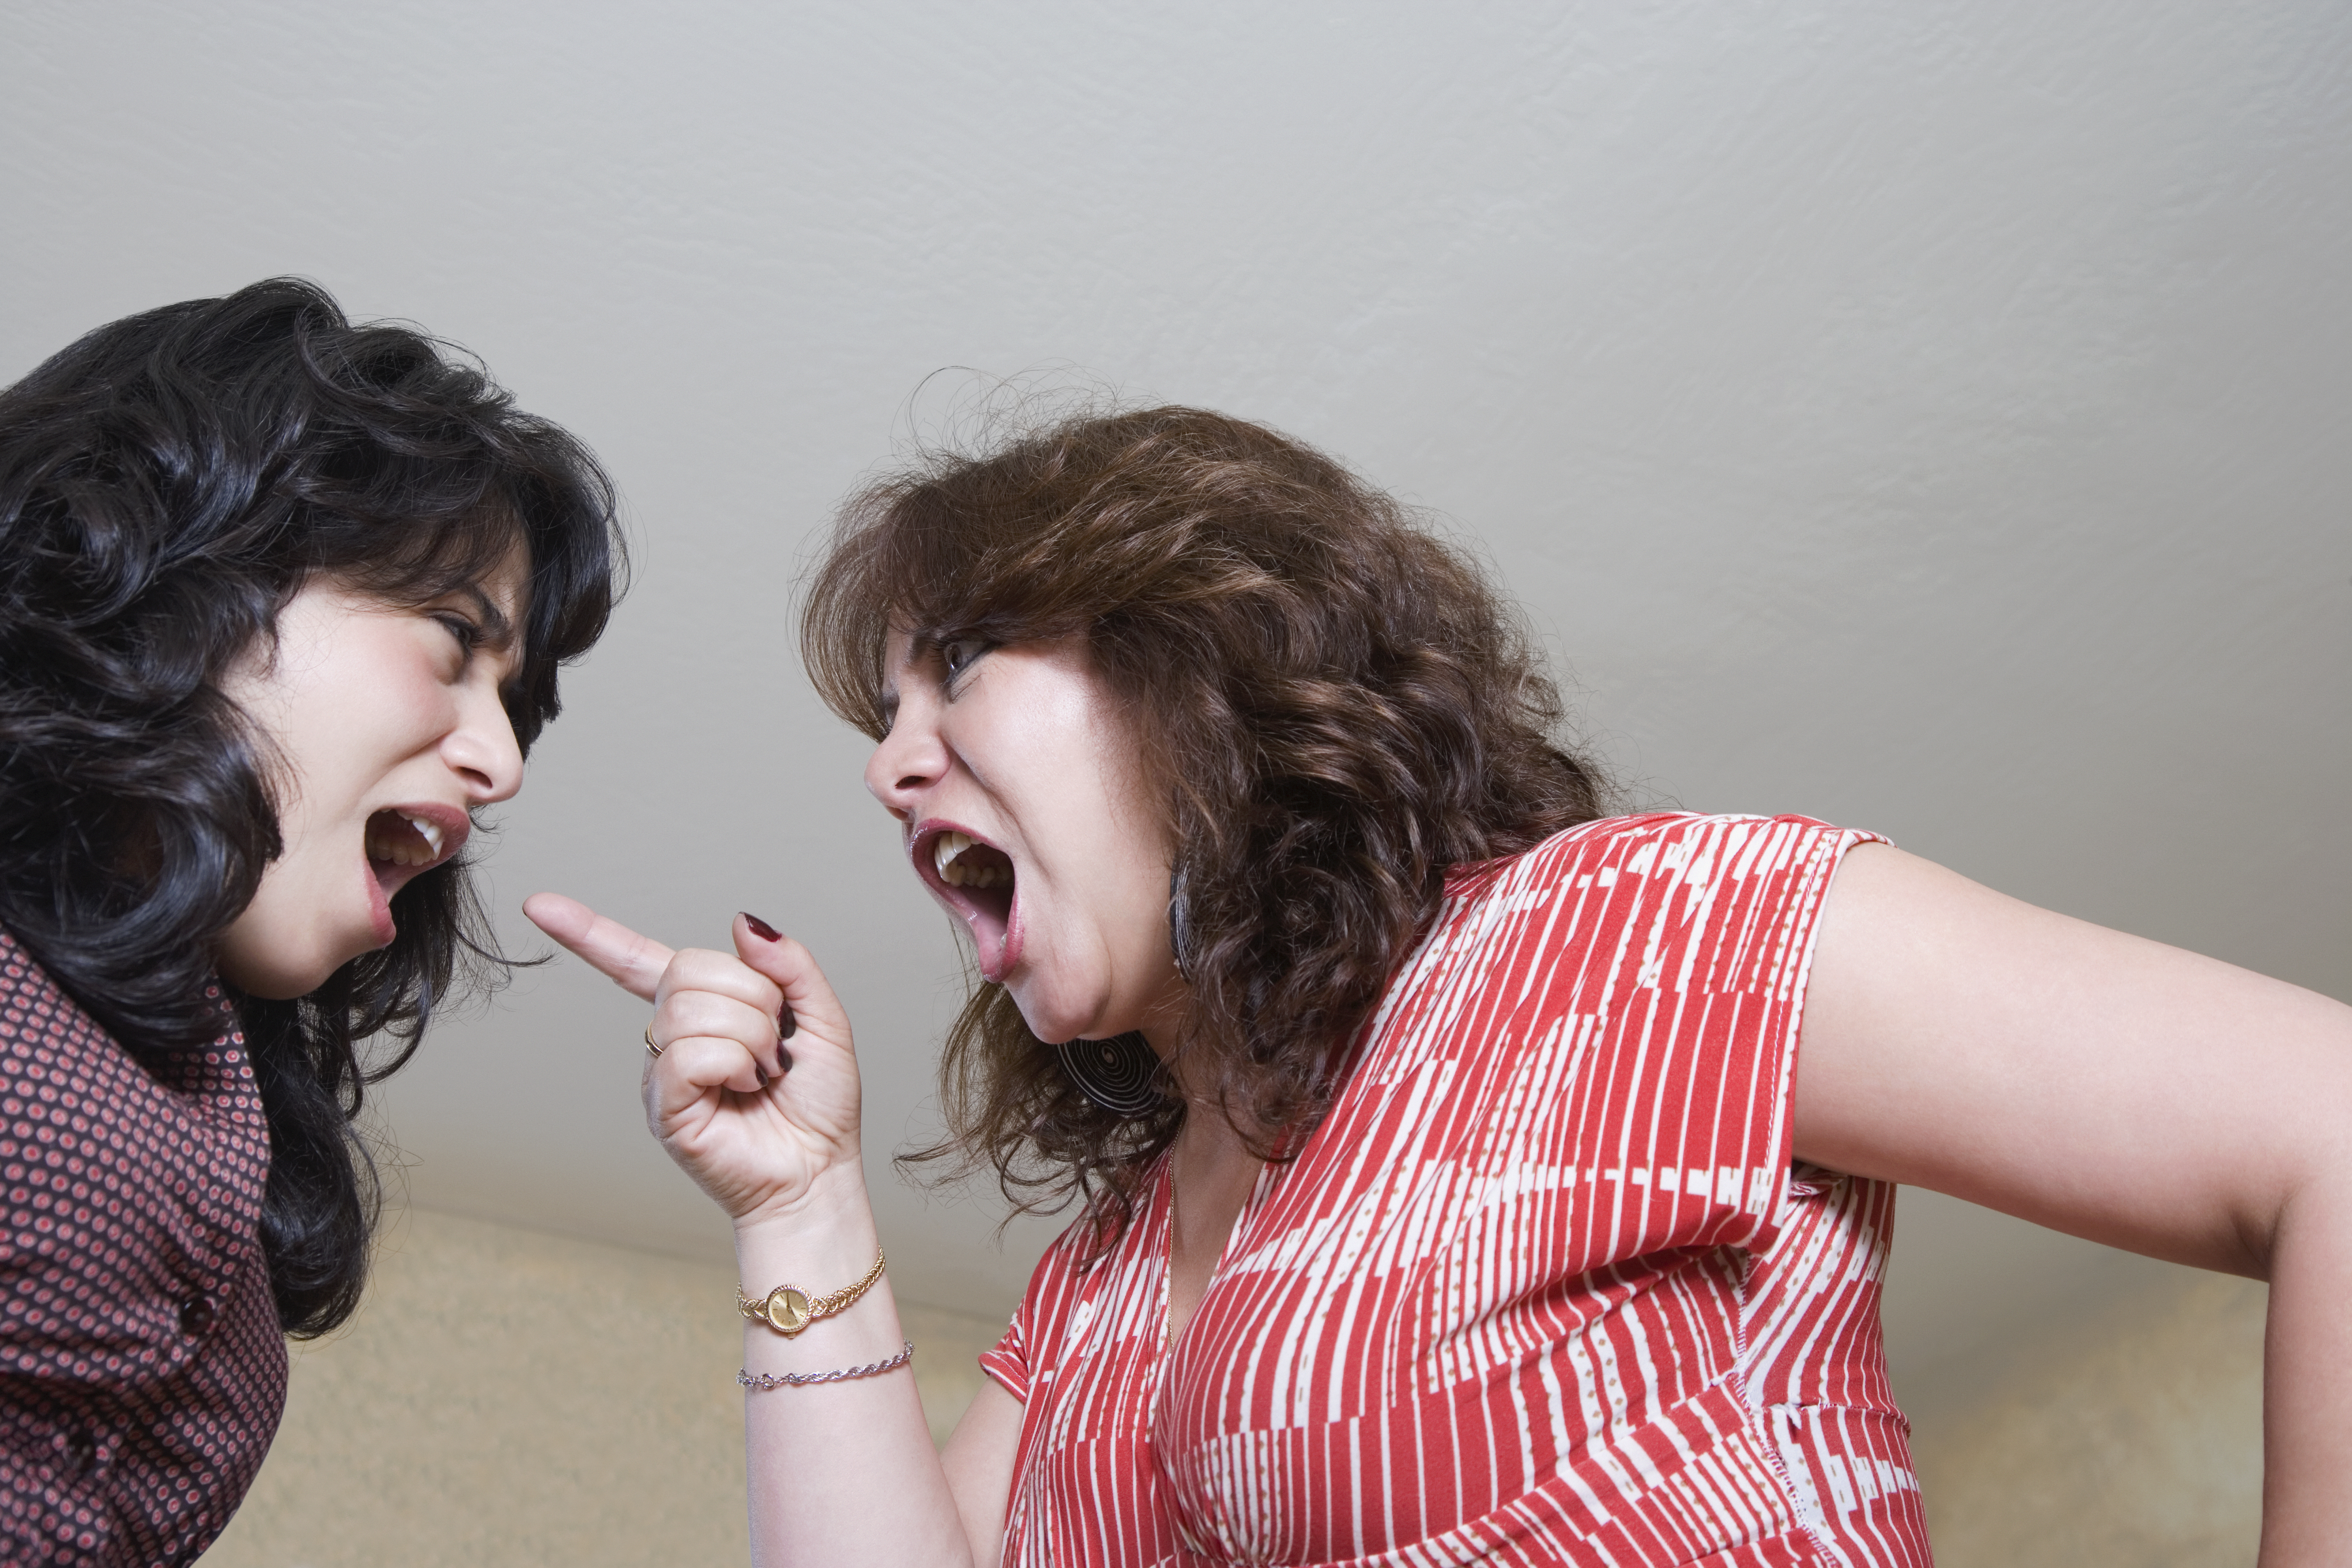 Membres d'une famille en train de se disputer | Source : Getty Images